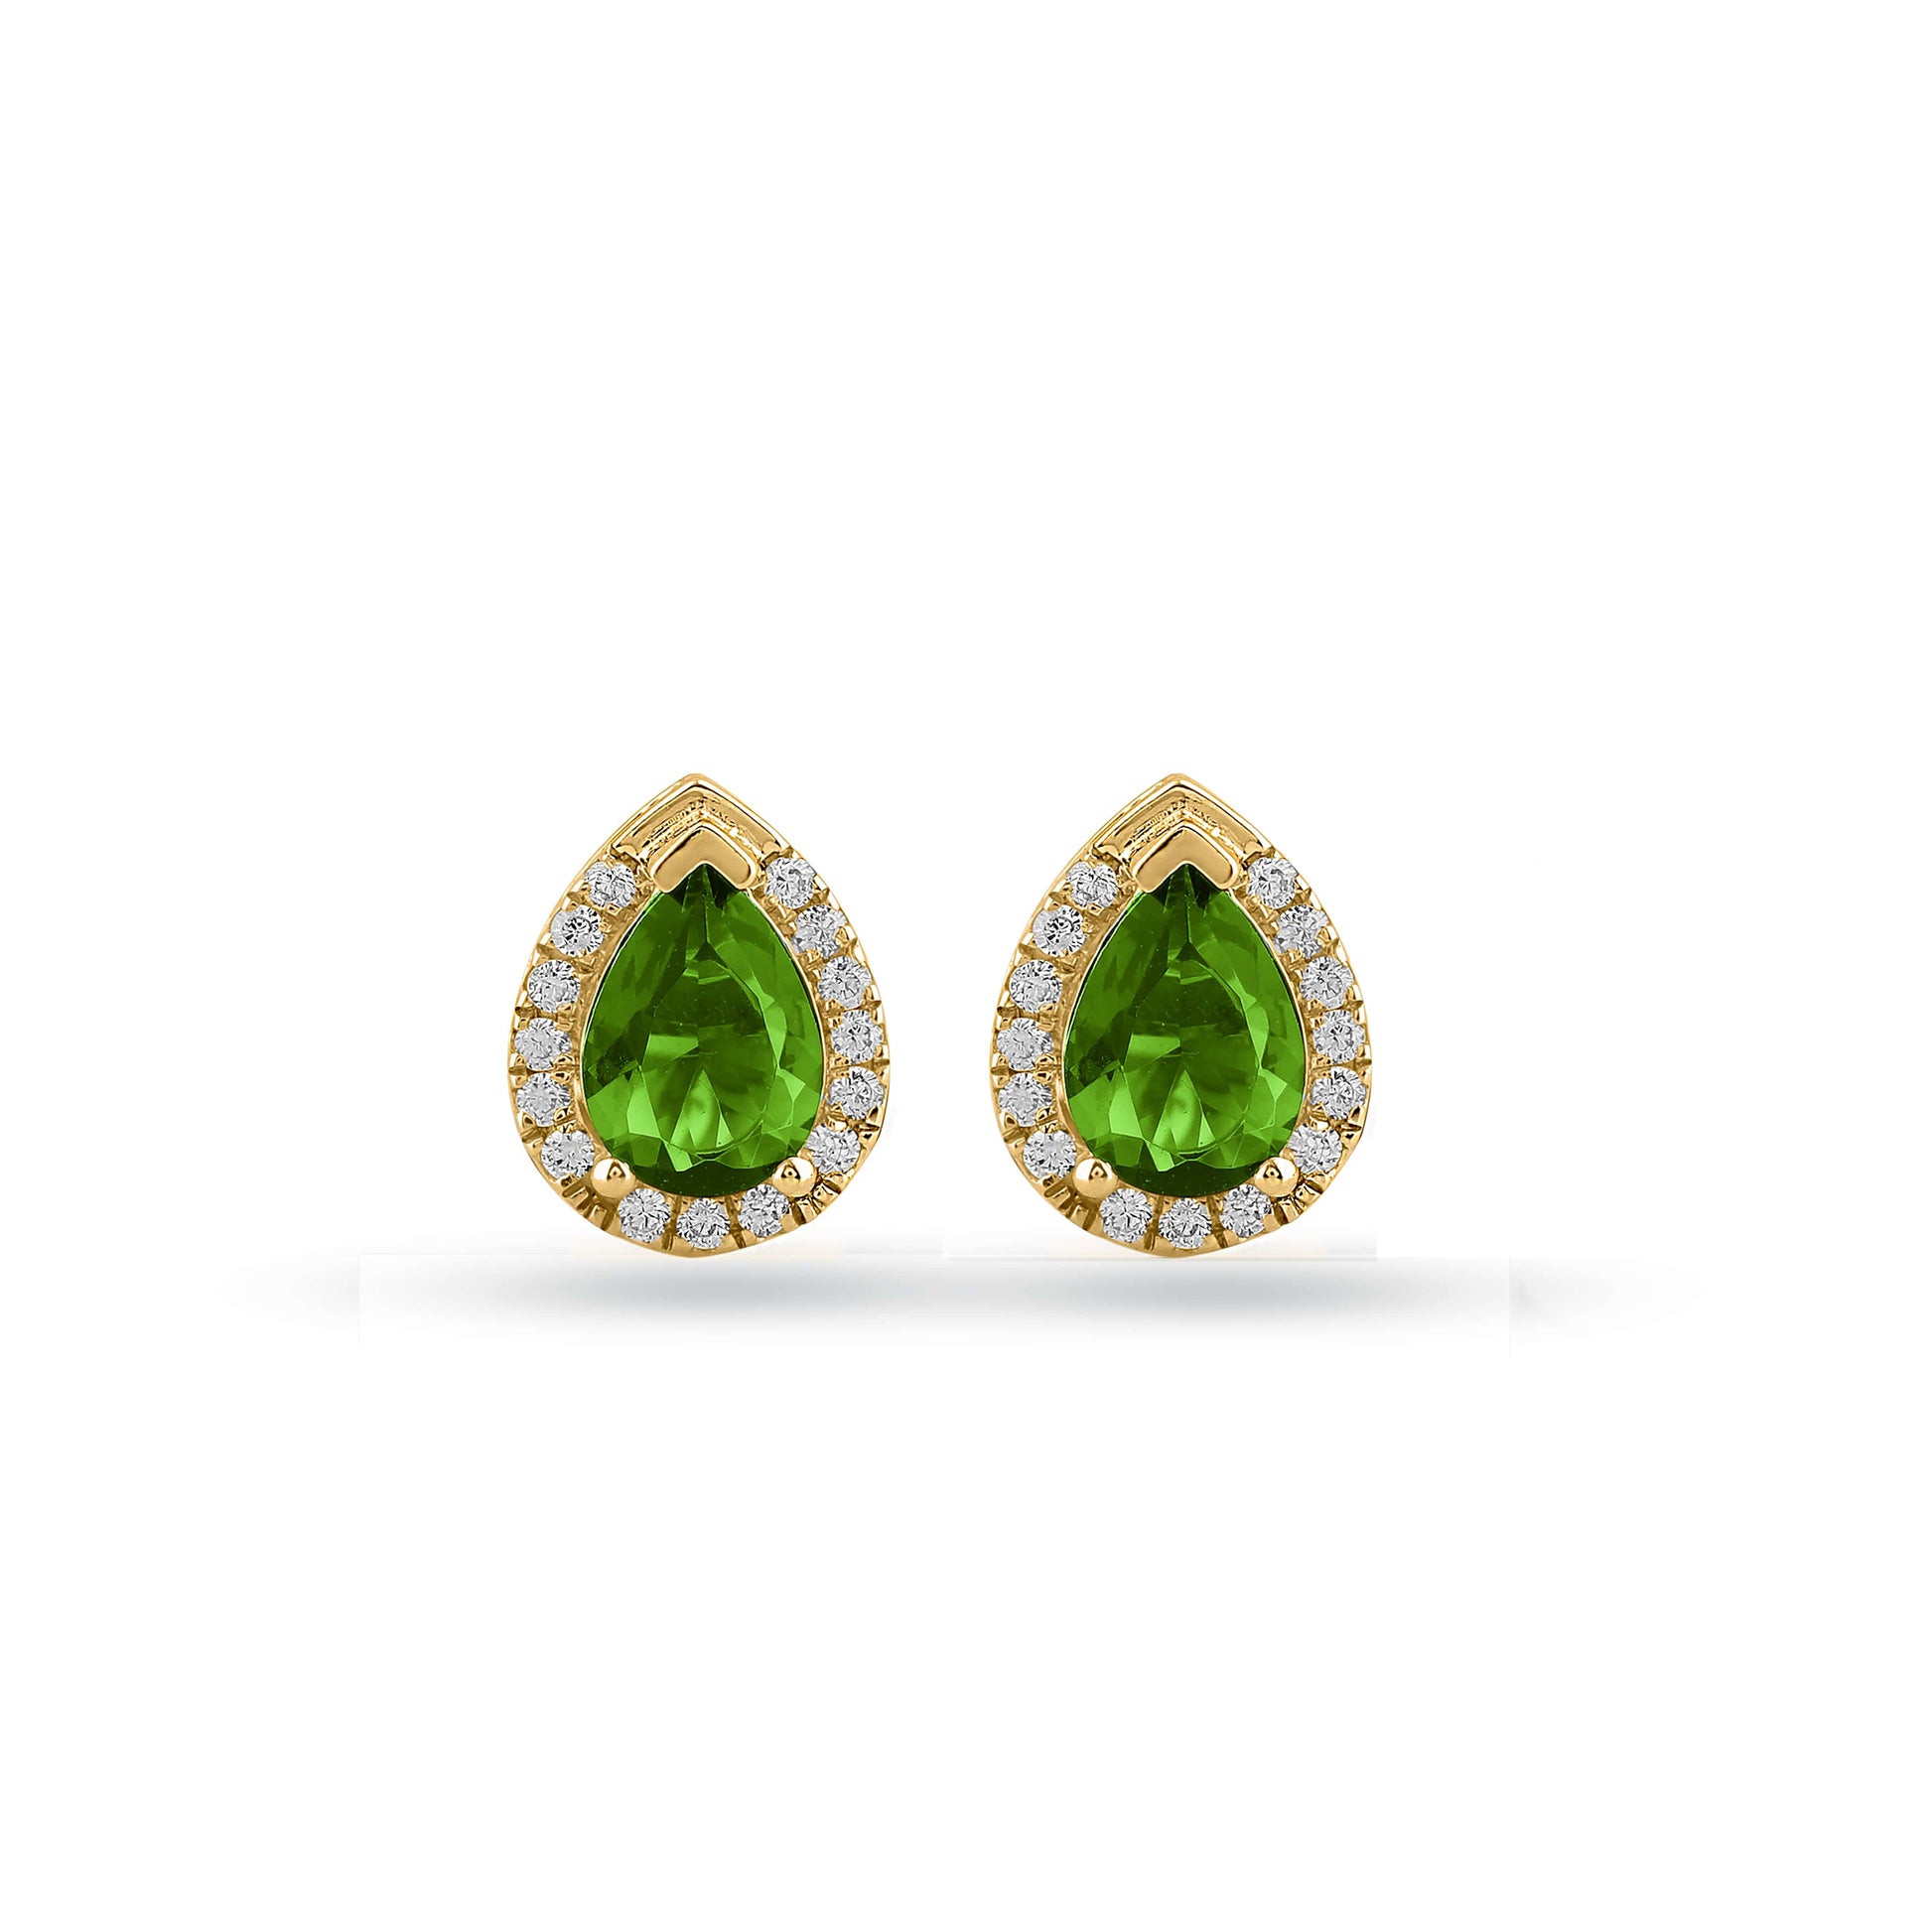 Pear-cut halo gemstone earrings